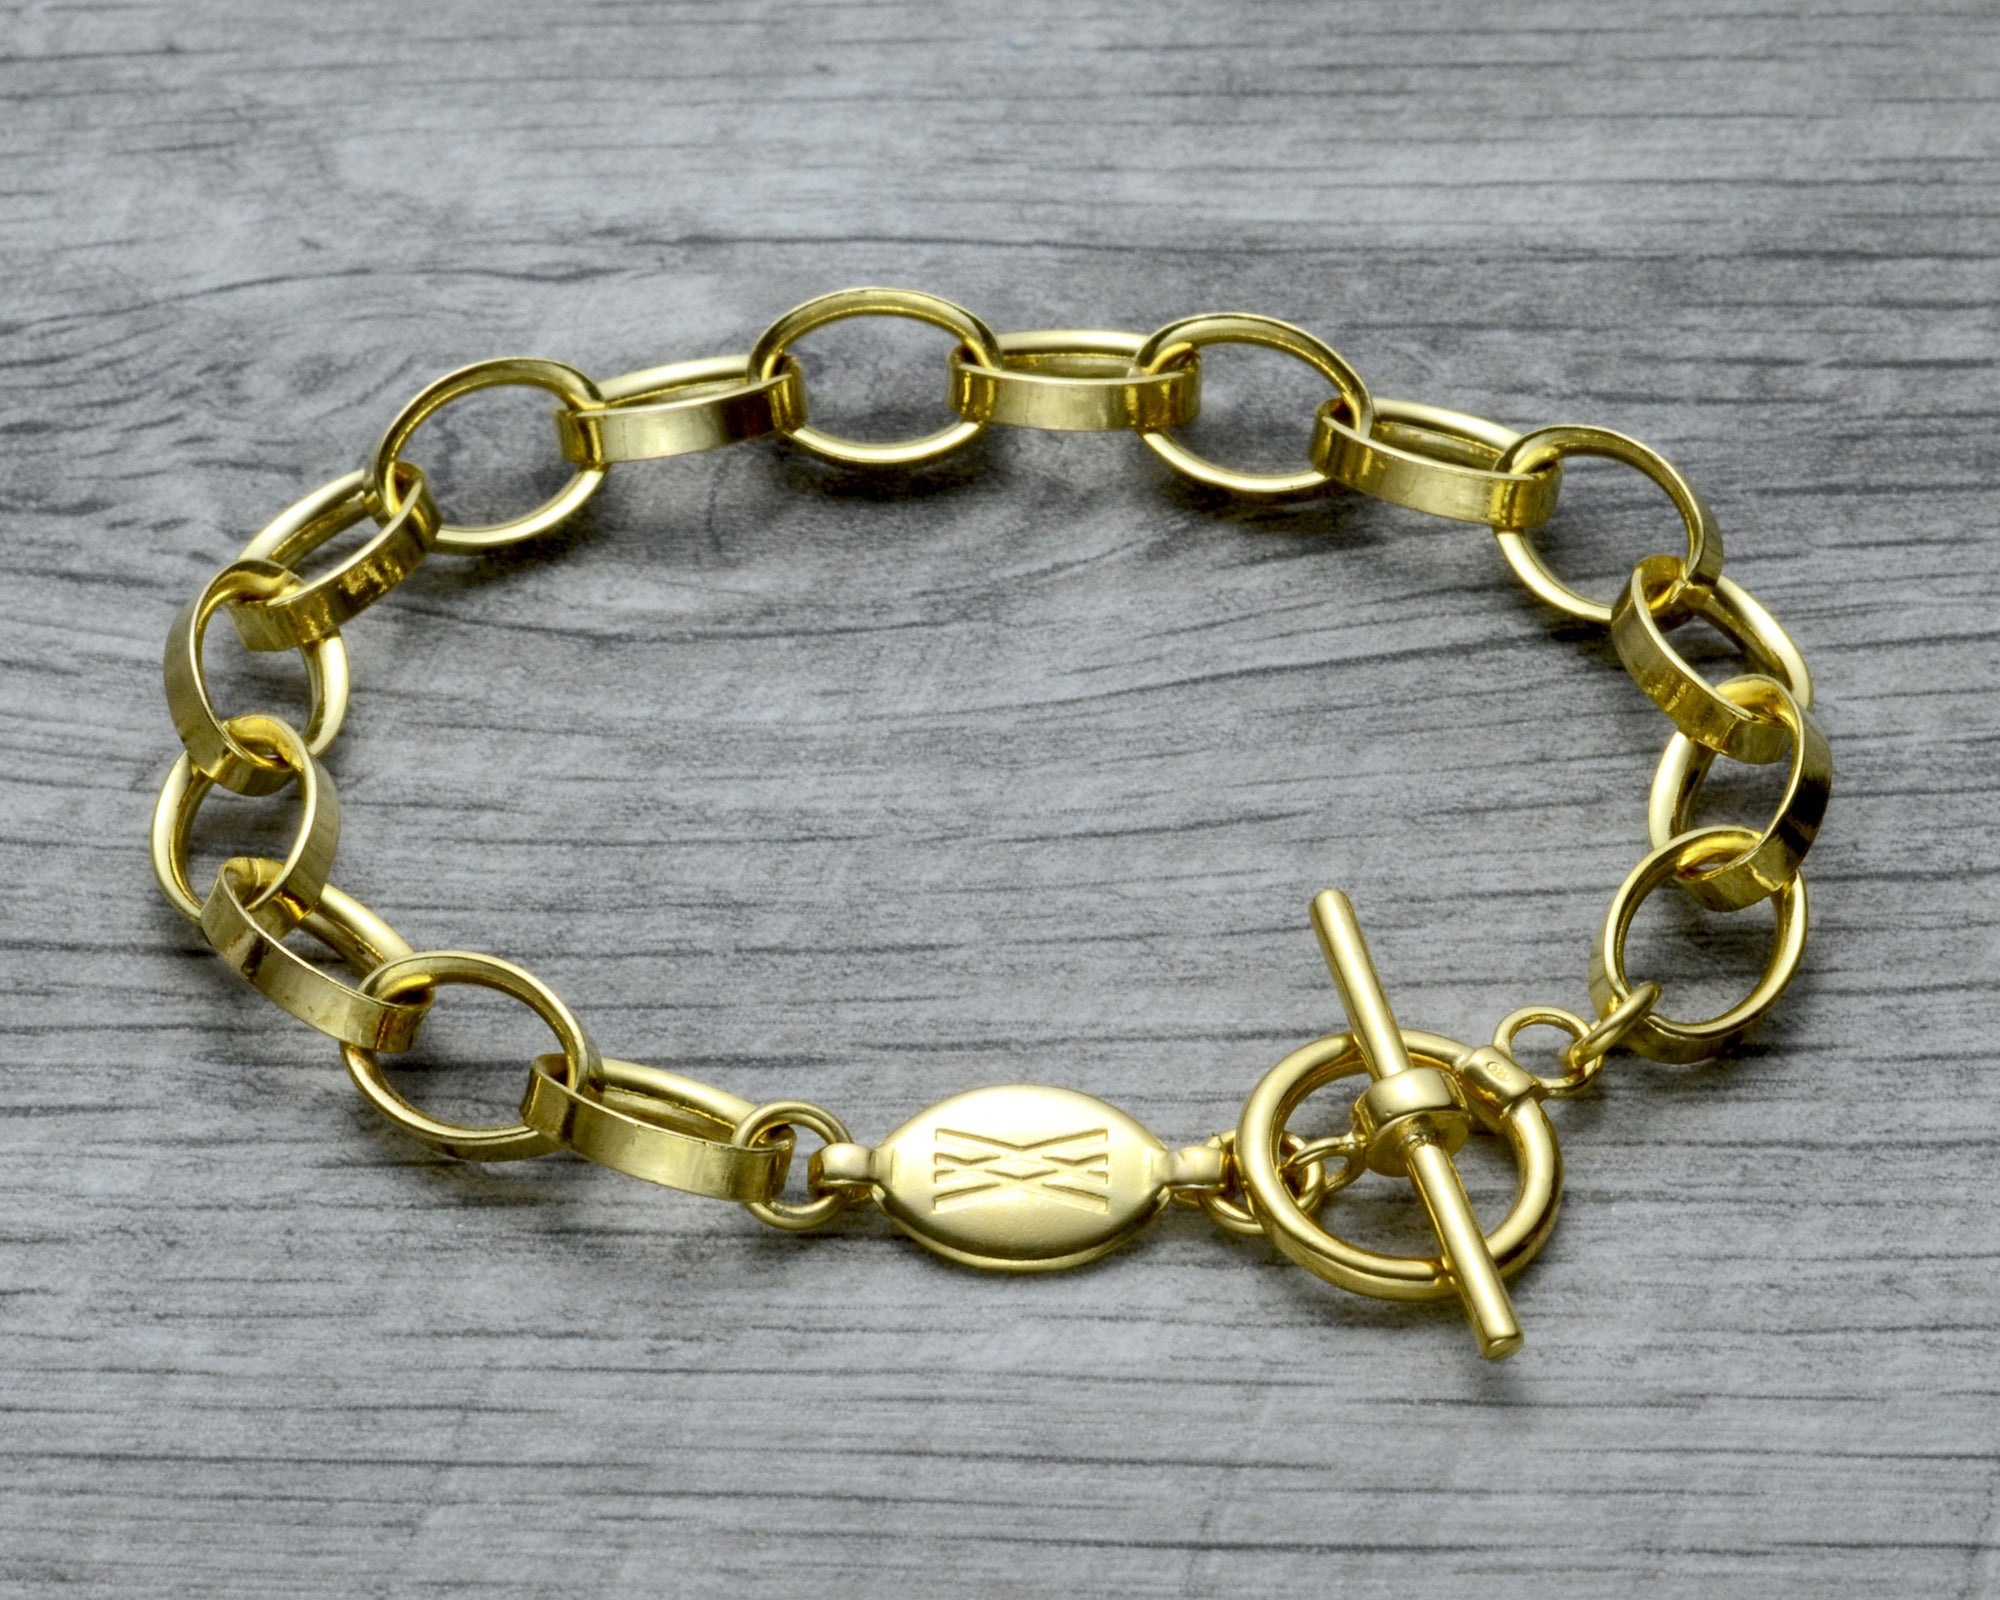 Gold vermeil charm bracelet